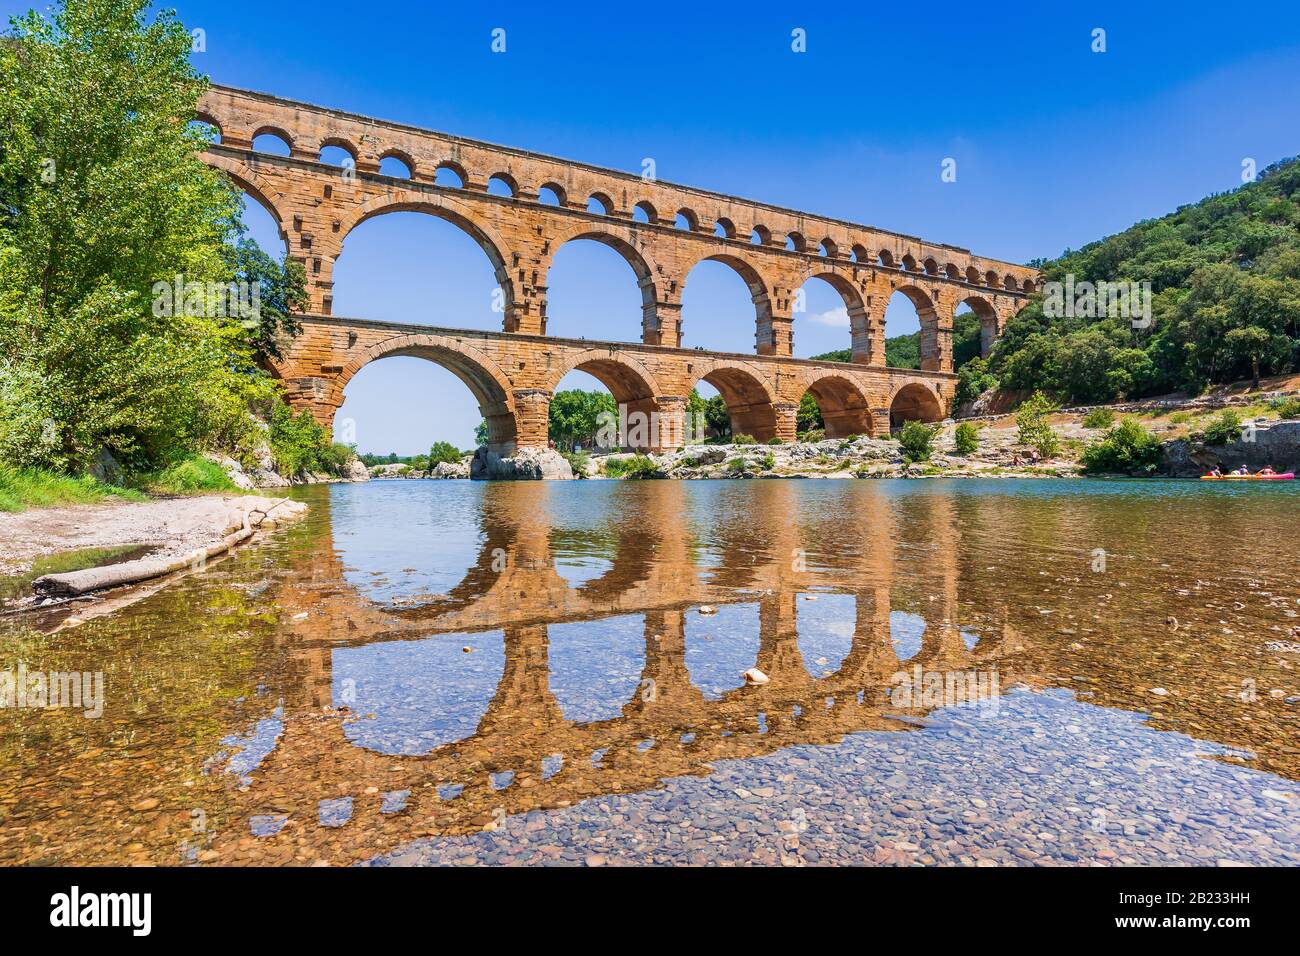 De Nimes, Francia. Antiguo acueducto del Pont du Gard. Foto de stock